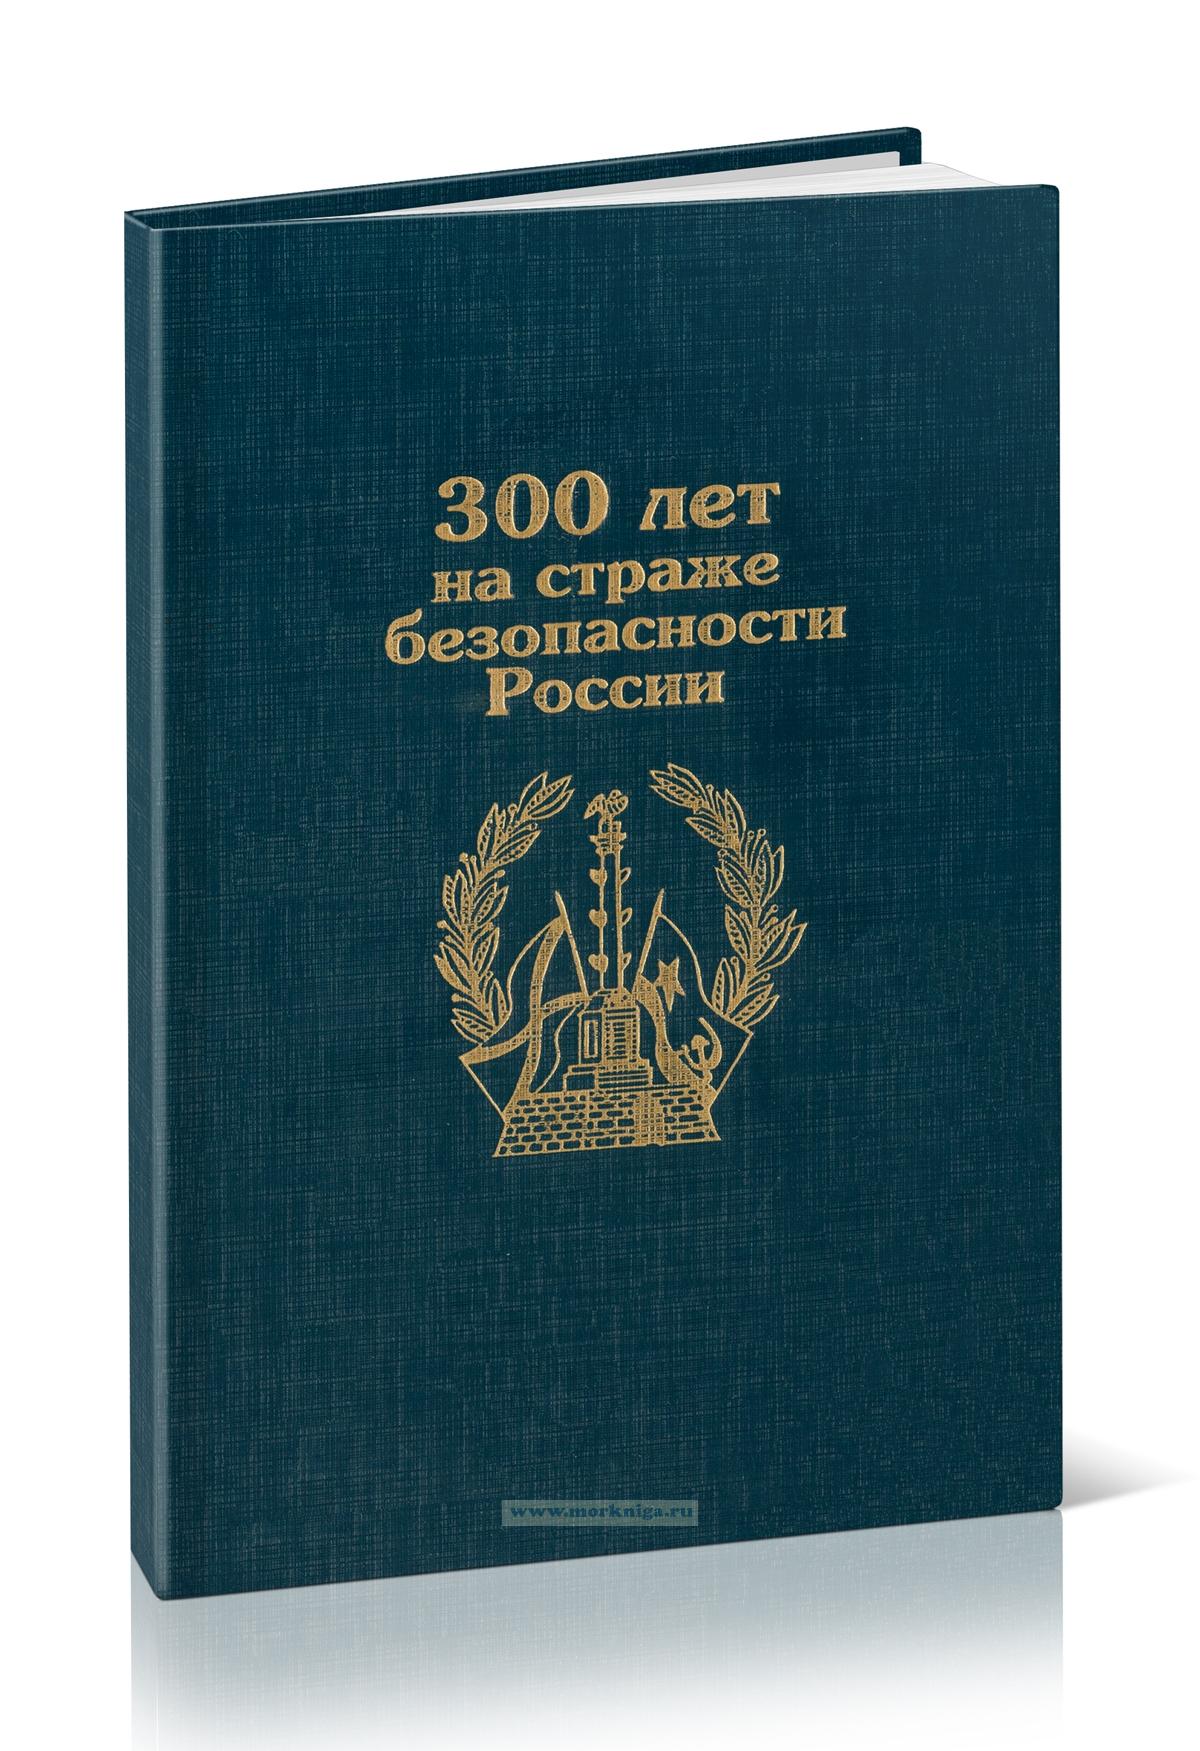 300 лет на страже безопасности России